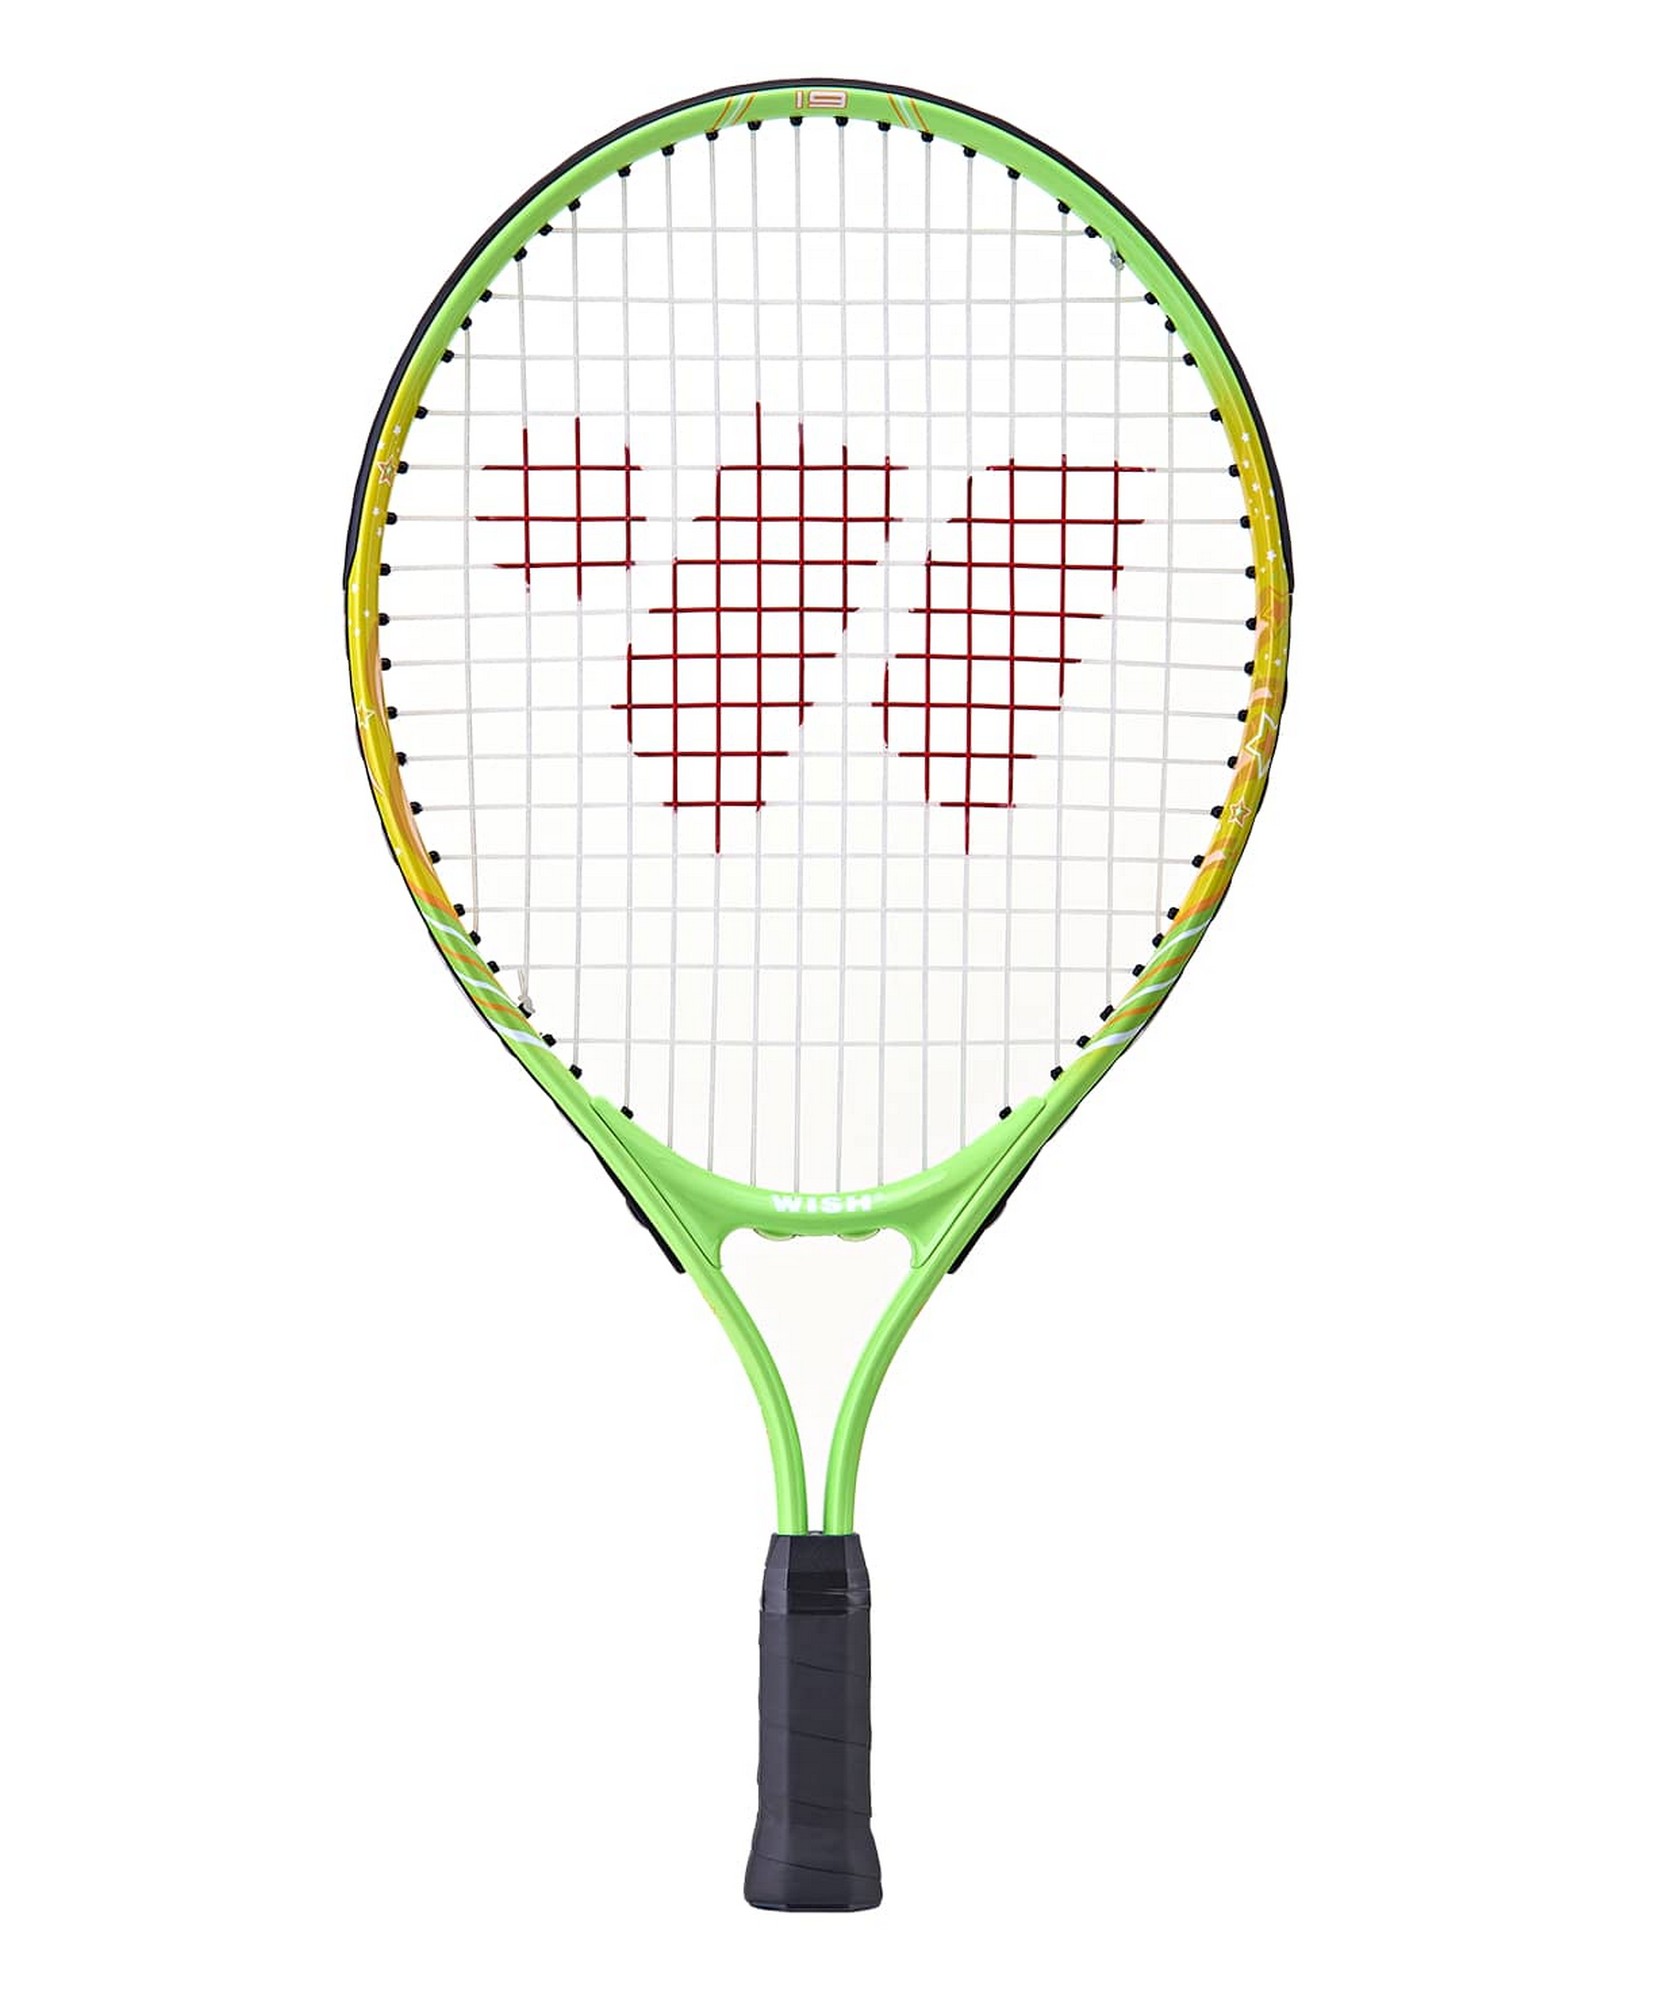 Ракетка для большого тенниса Wish AlumTec JR, 19’’ 2900 зеленый